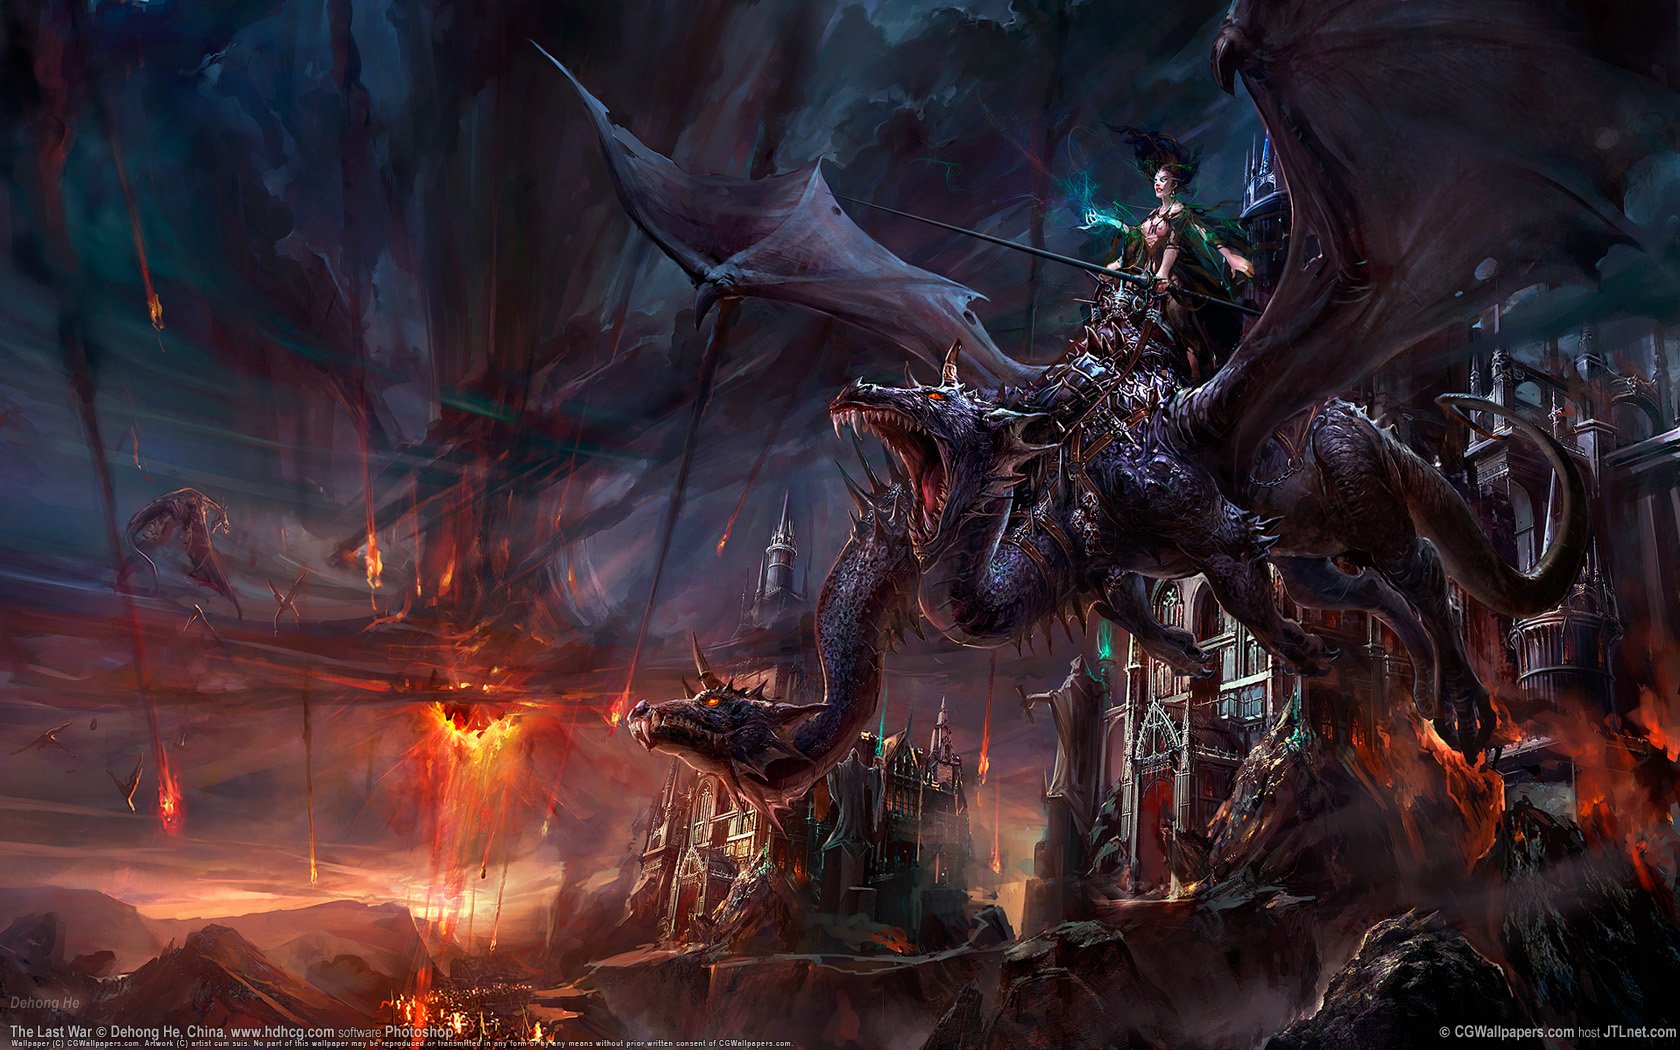 wings, Dragons, Rider, Fire, Magic, Artwork Wallpaper